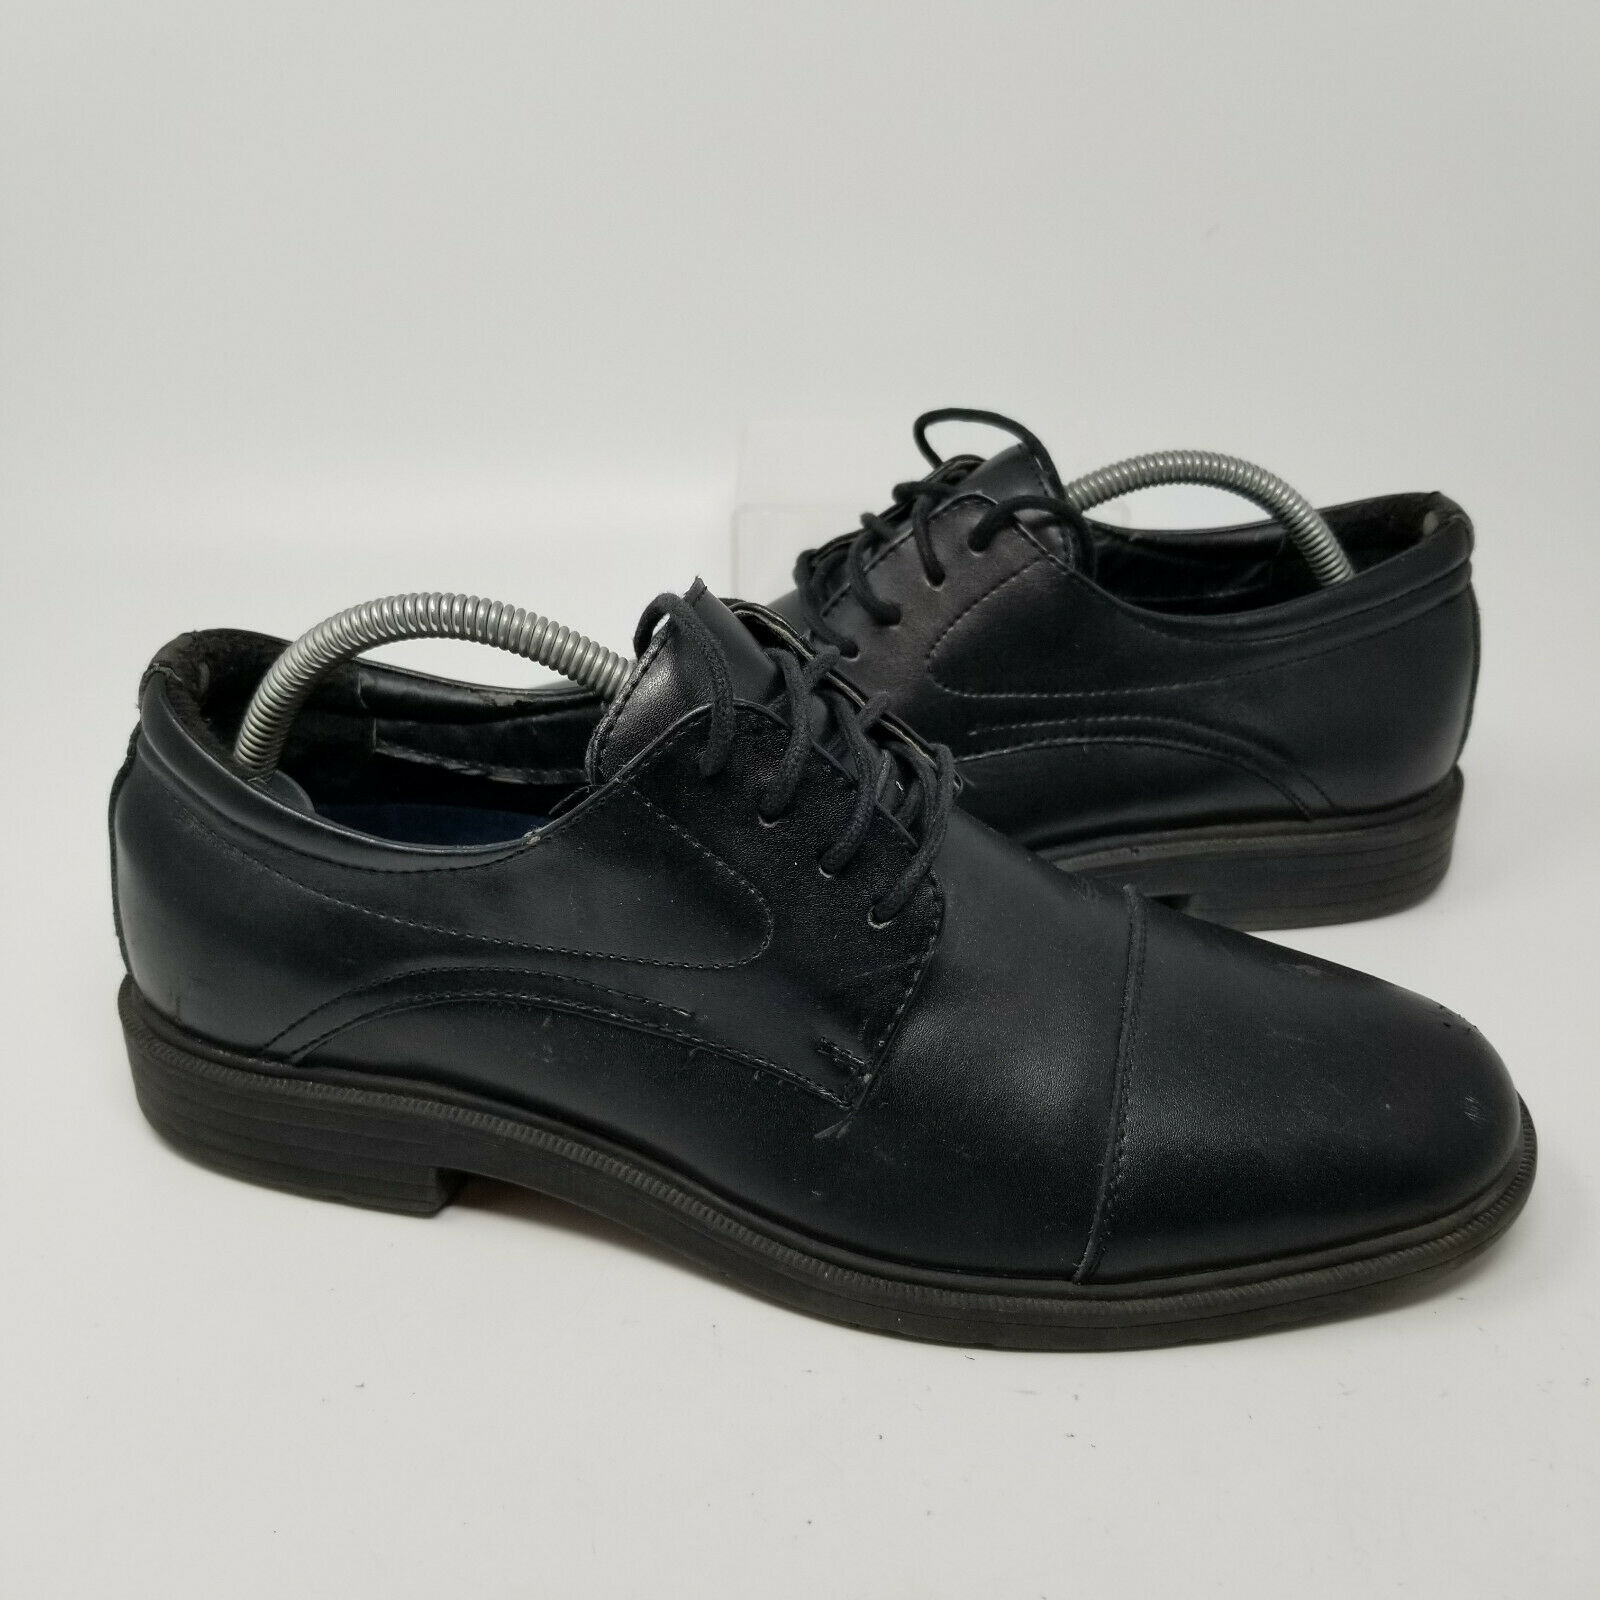 Dr. Scholls Black Leather Lace Up Cap Toe Dress Oxford Shoes Men Size 9 W